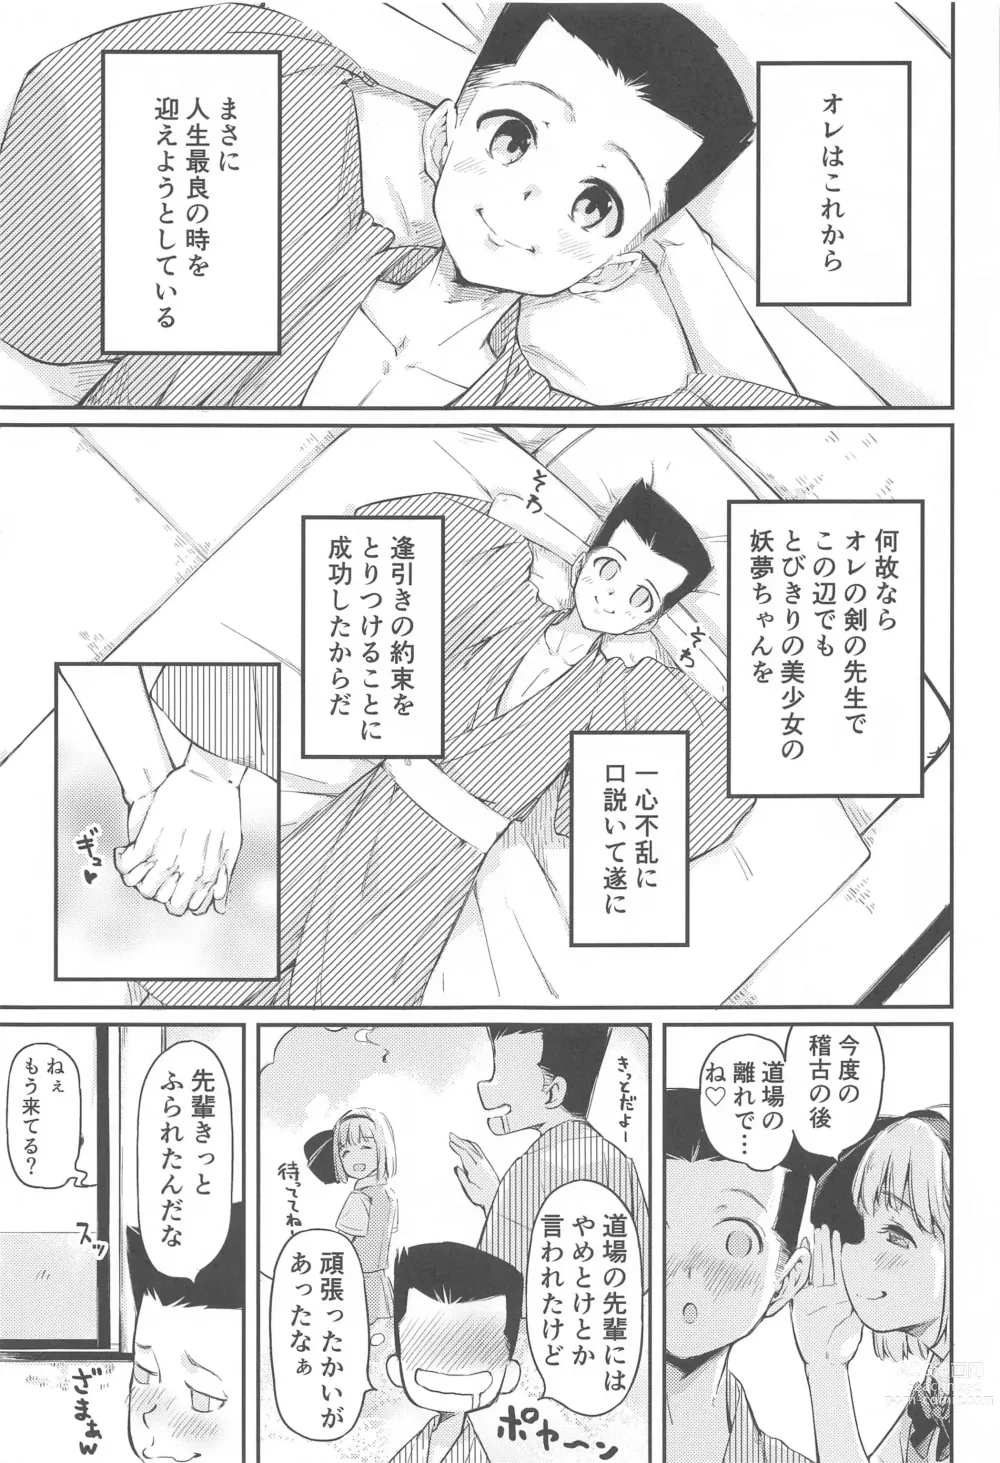 Page 2 of doujinshi Niwashi no Musume wa Minna ni Aisaretai.